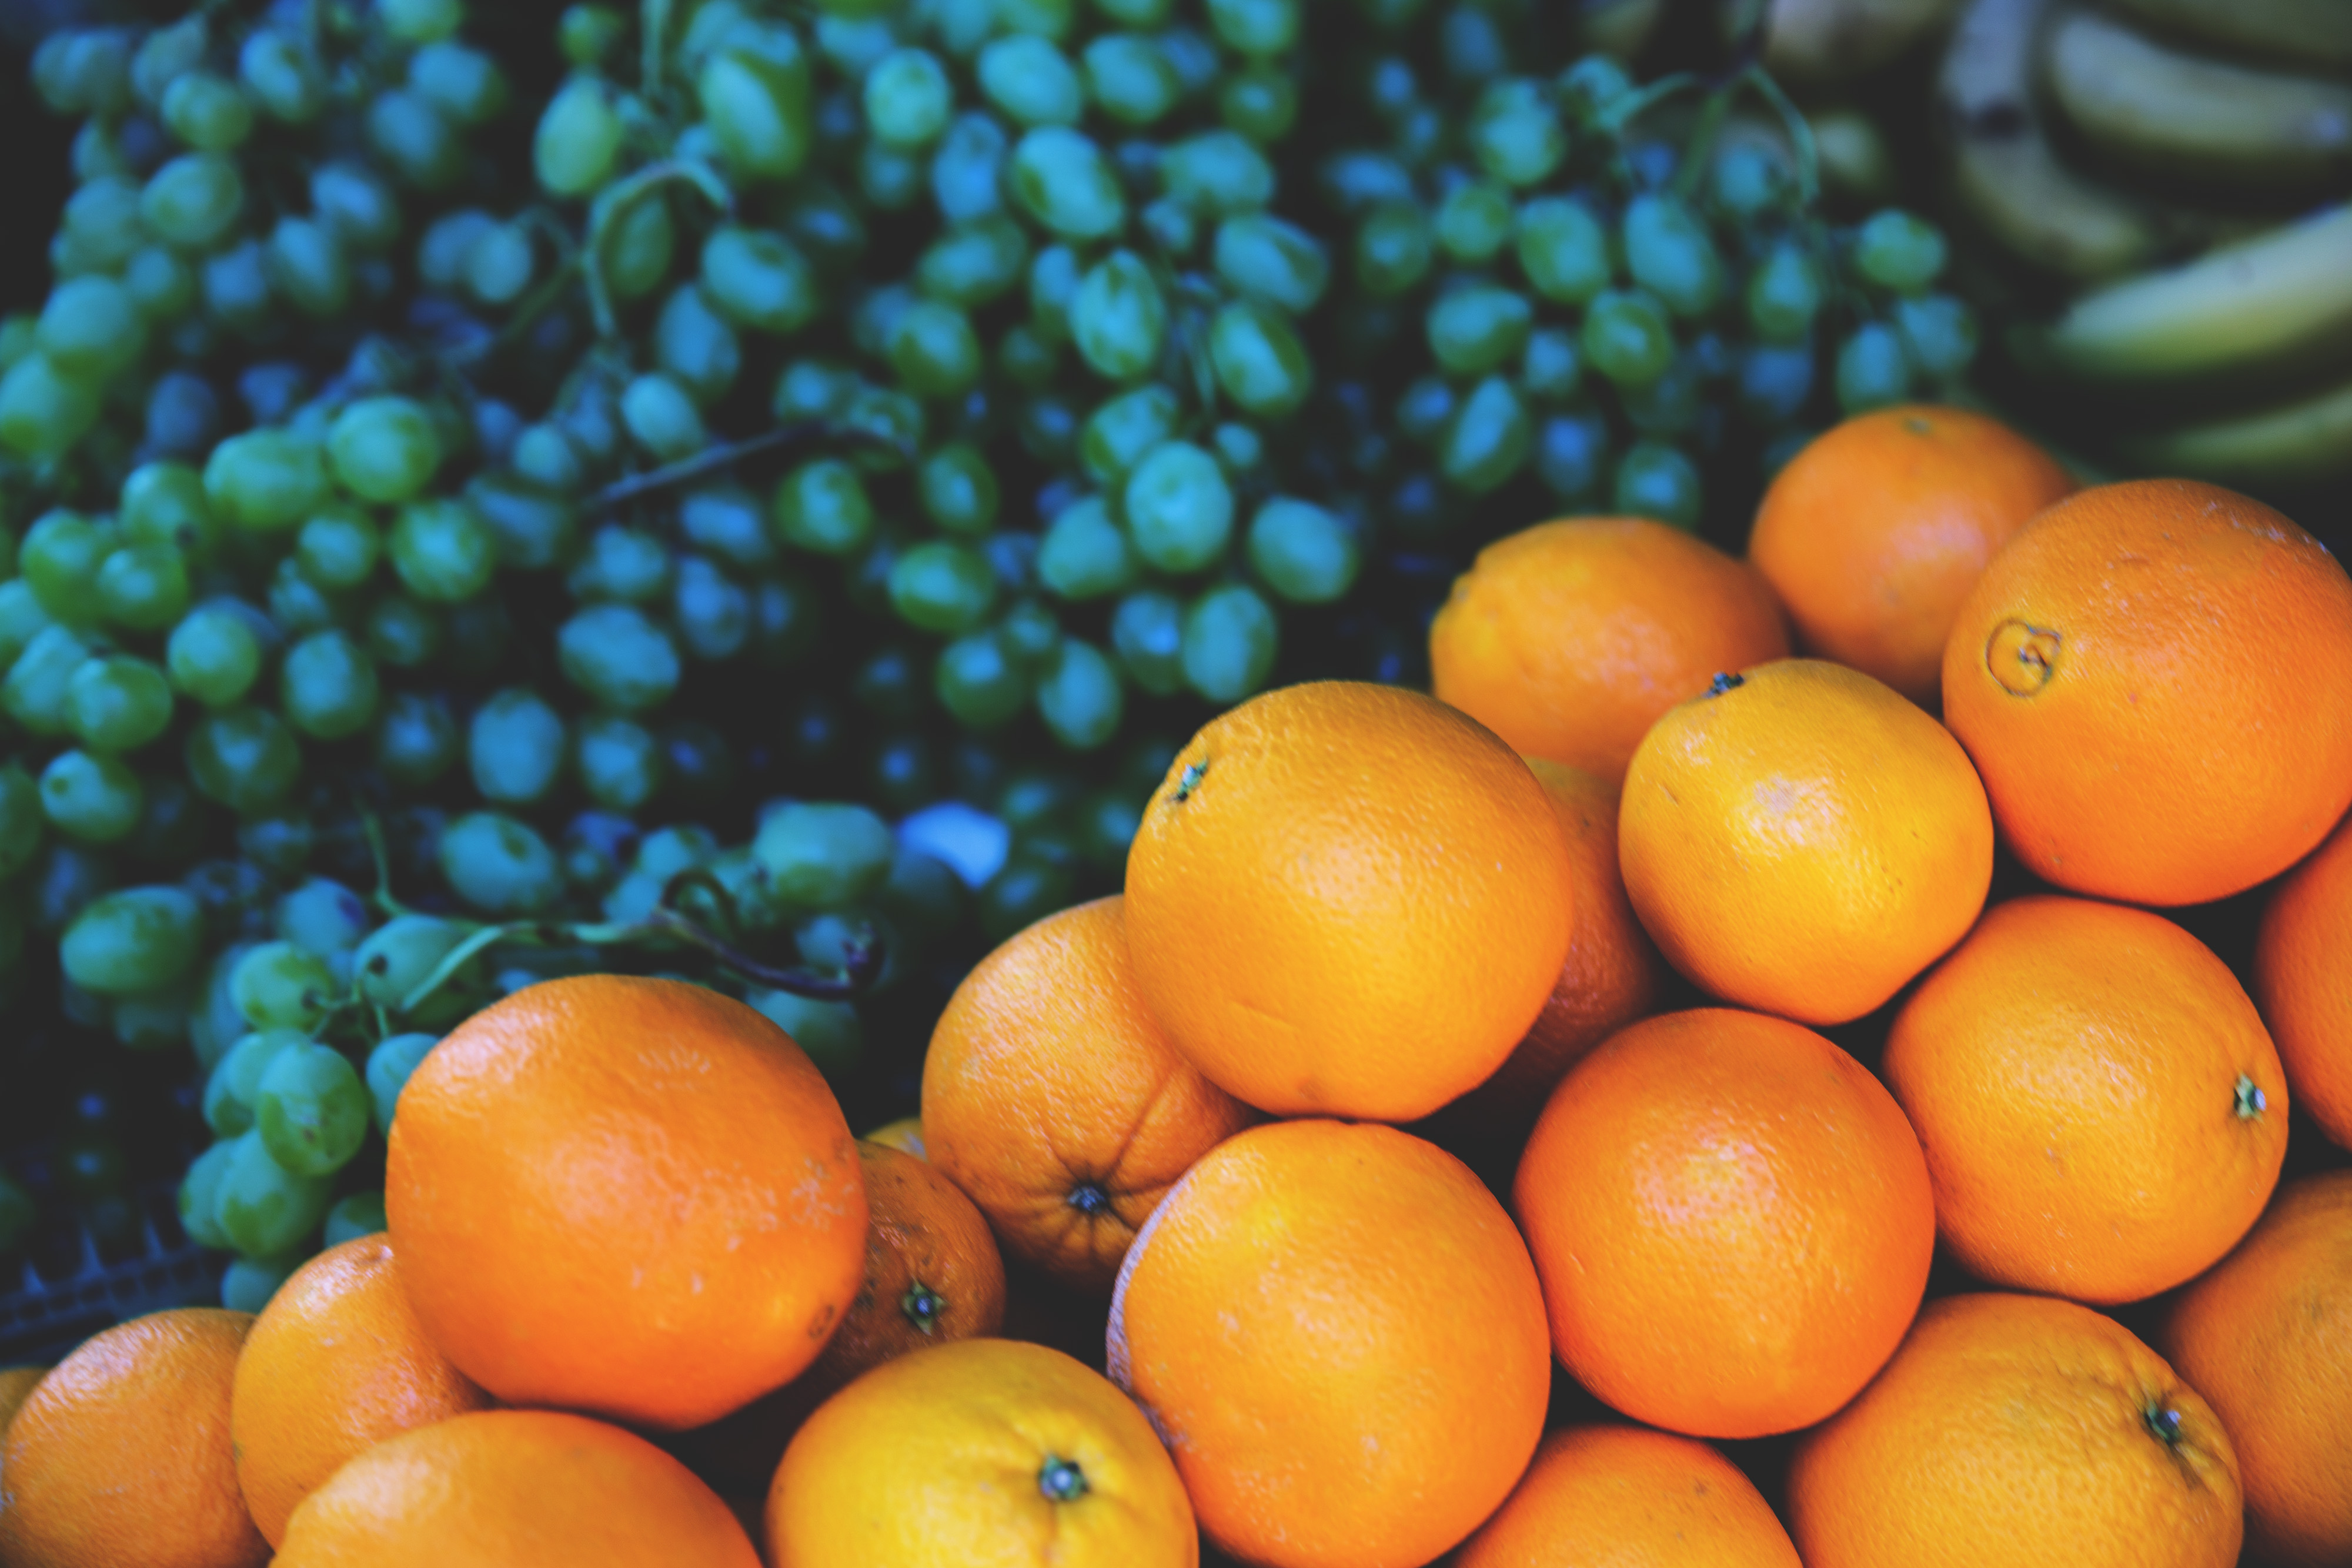 desktop Images fruits, food, oranges, grapes